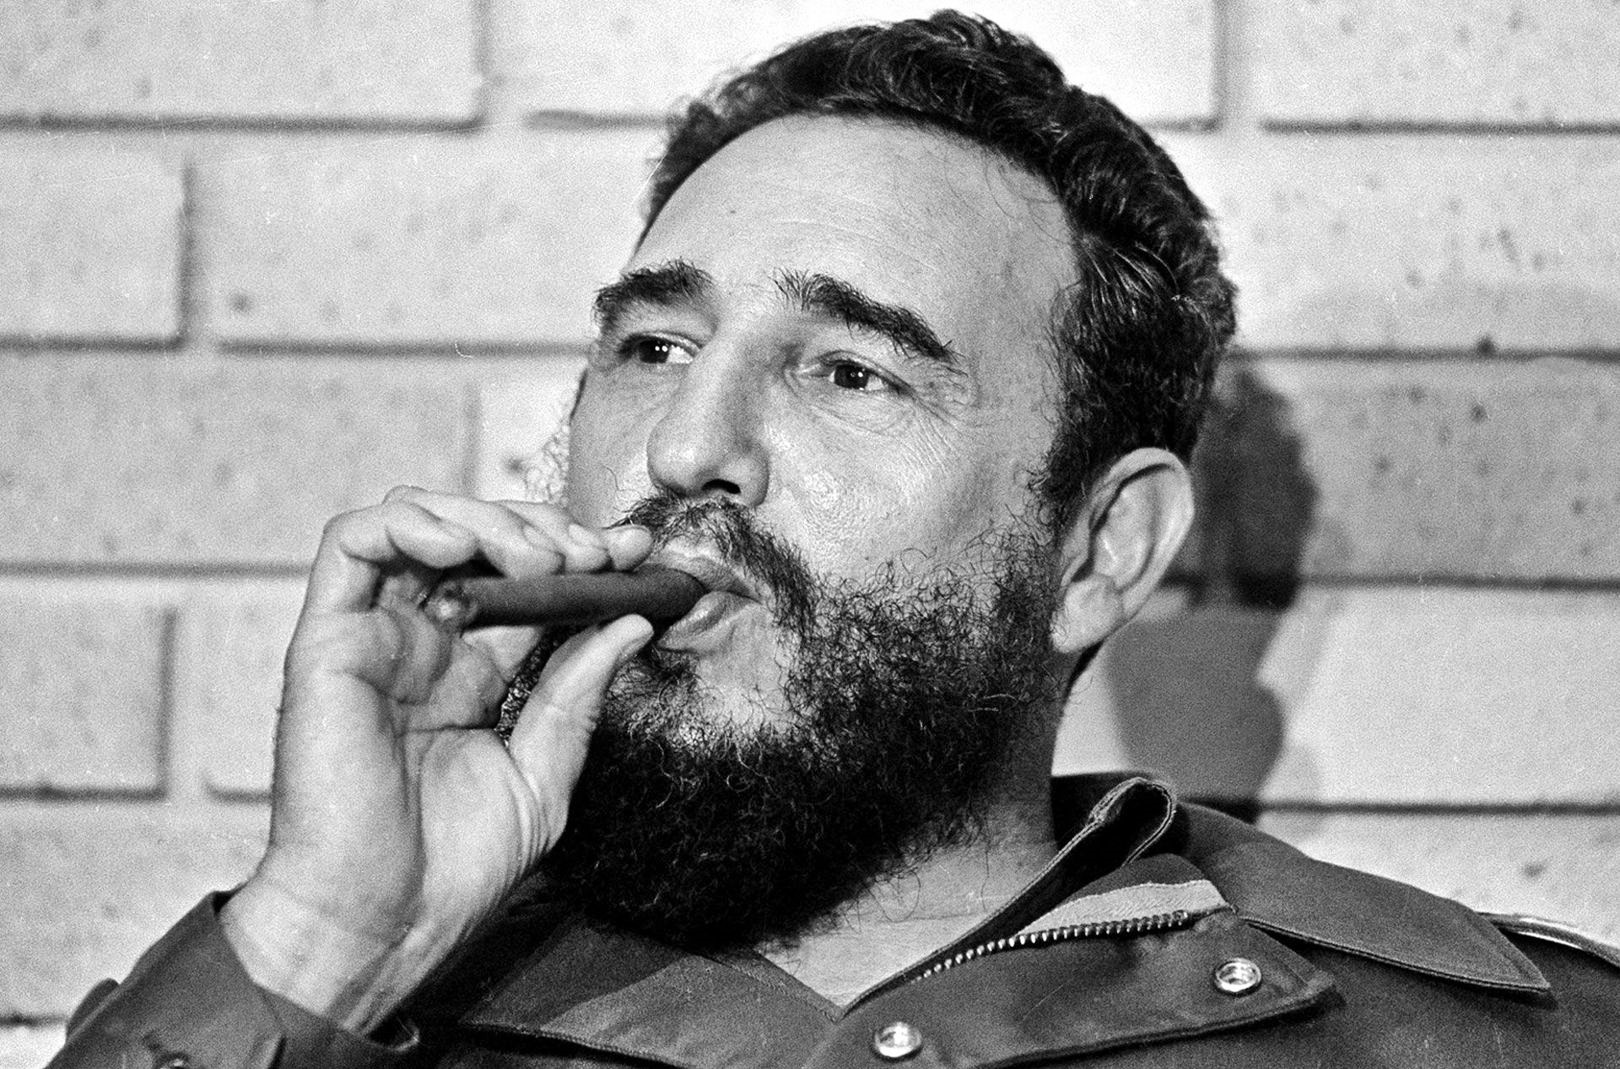 Cuba commemora primo anniversario della morte di Fidel Castro. Ha diviso l’opinione pubblica mondiale: fu eroe o dittatore?